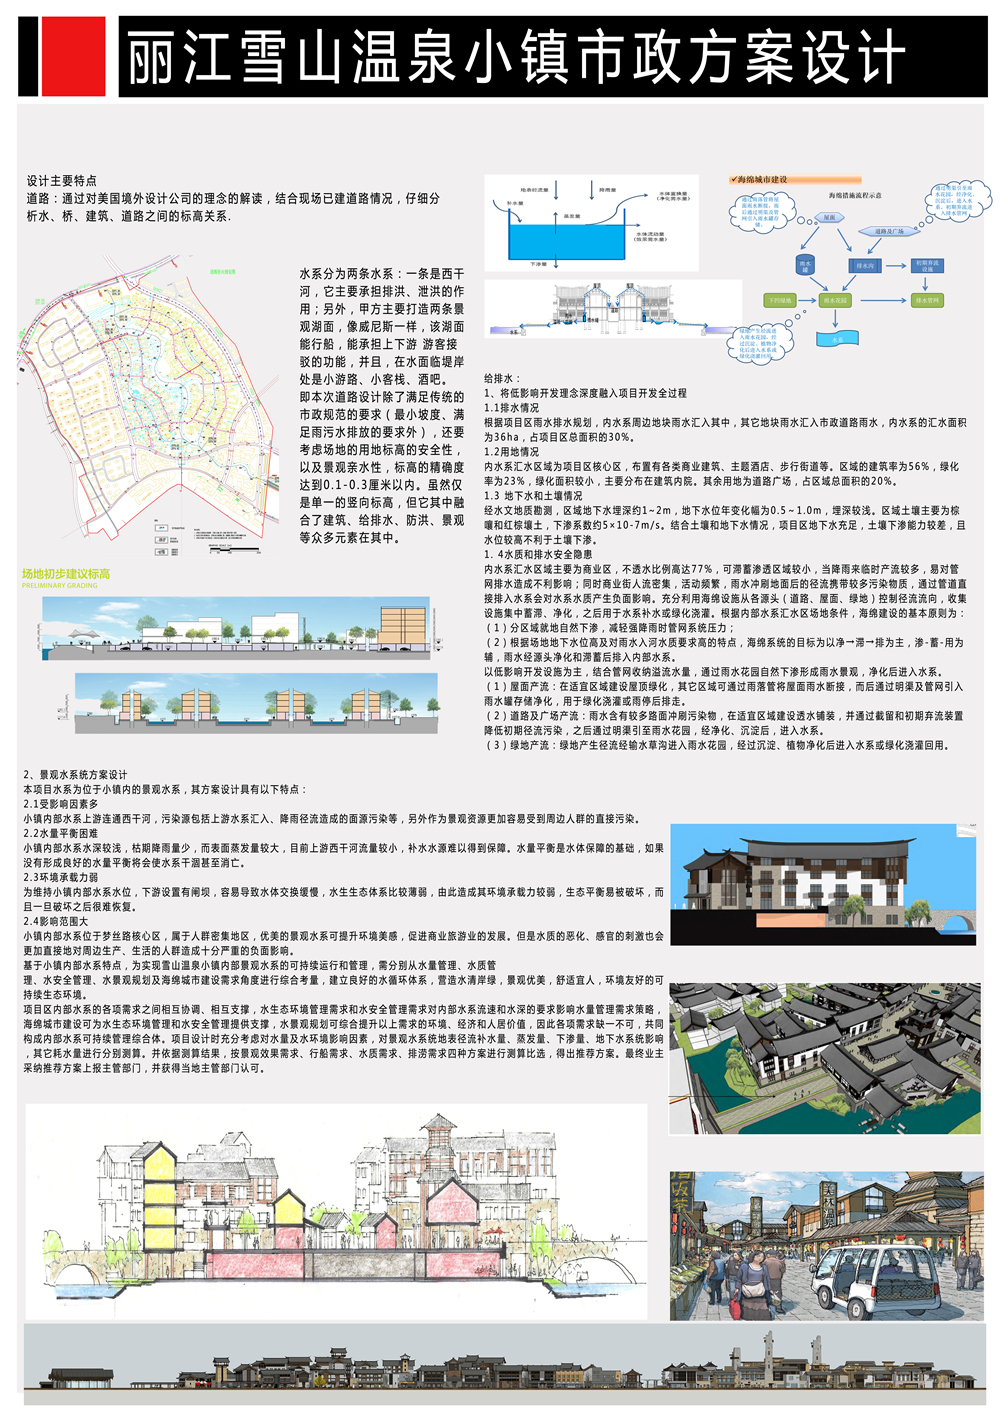 丽江雪山温泉小镇市政工程方案设计.jpg